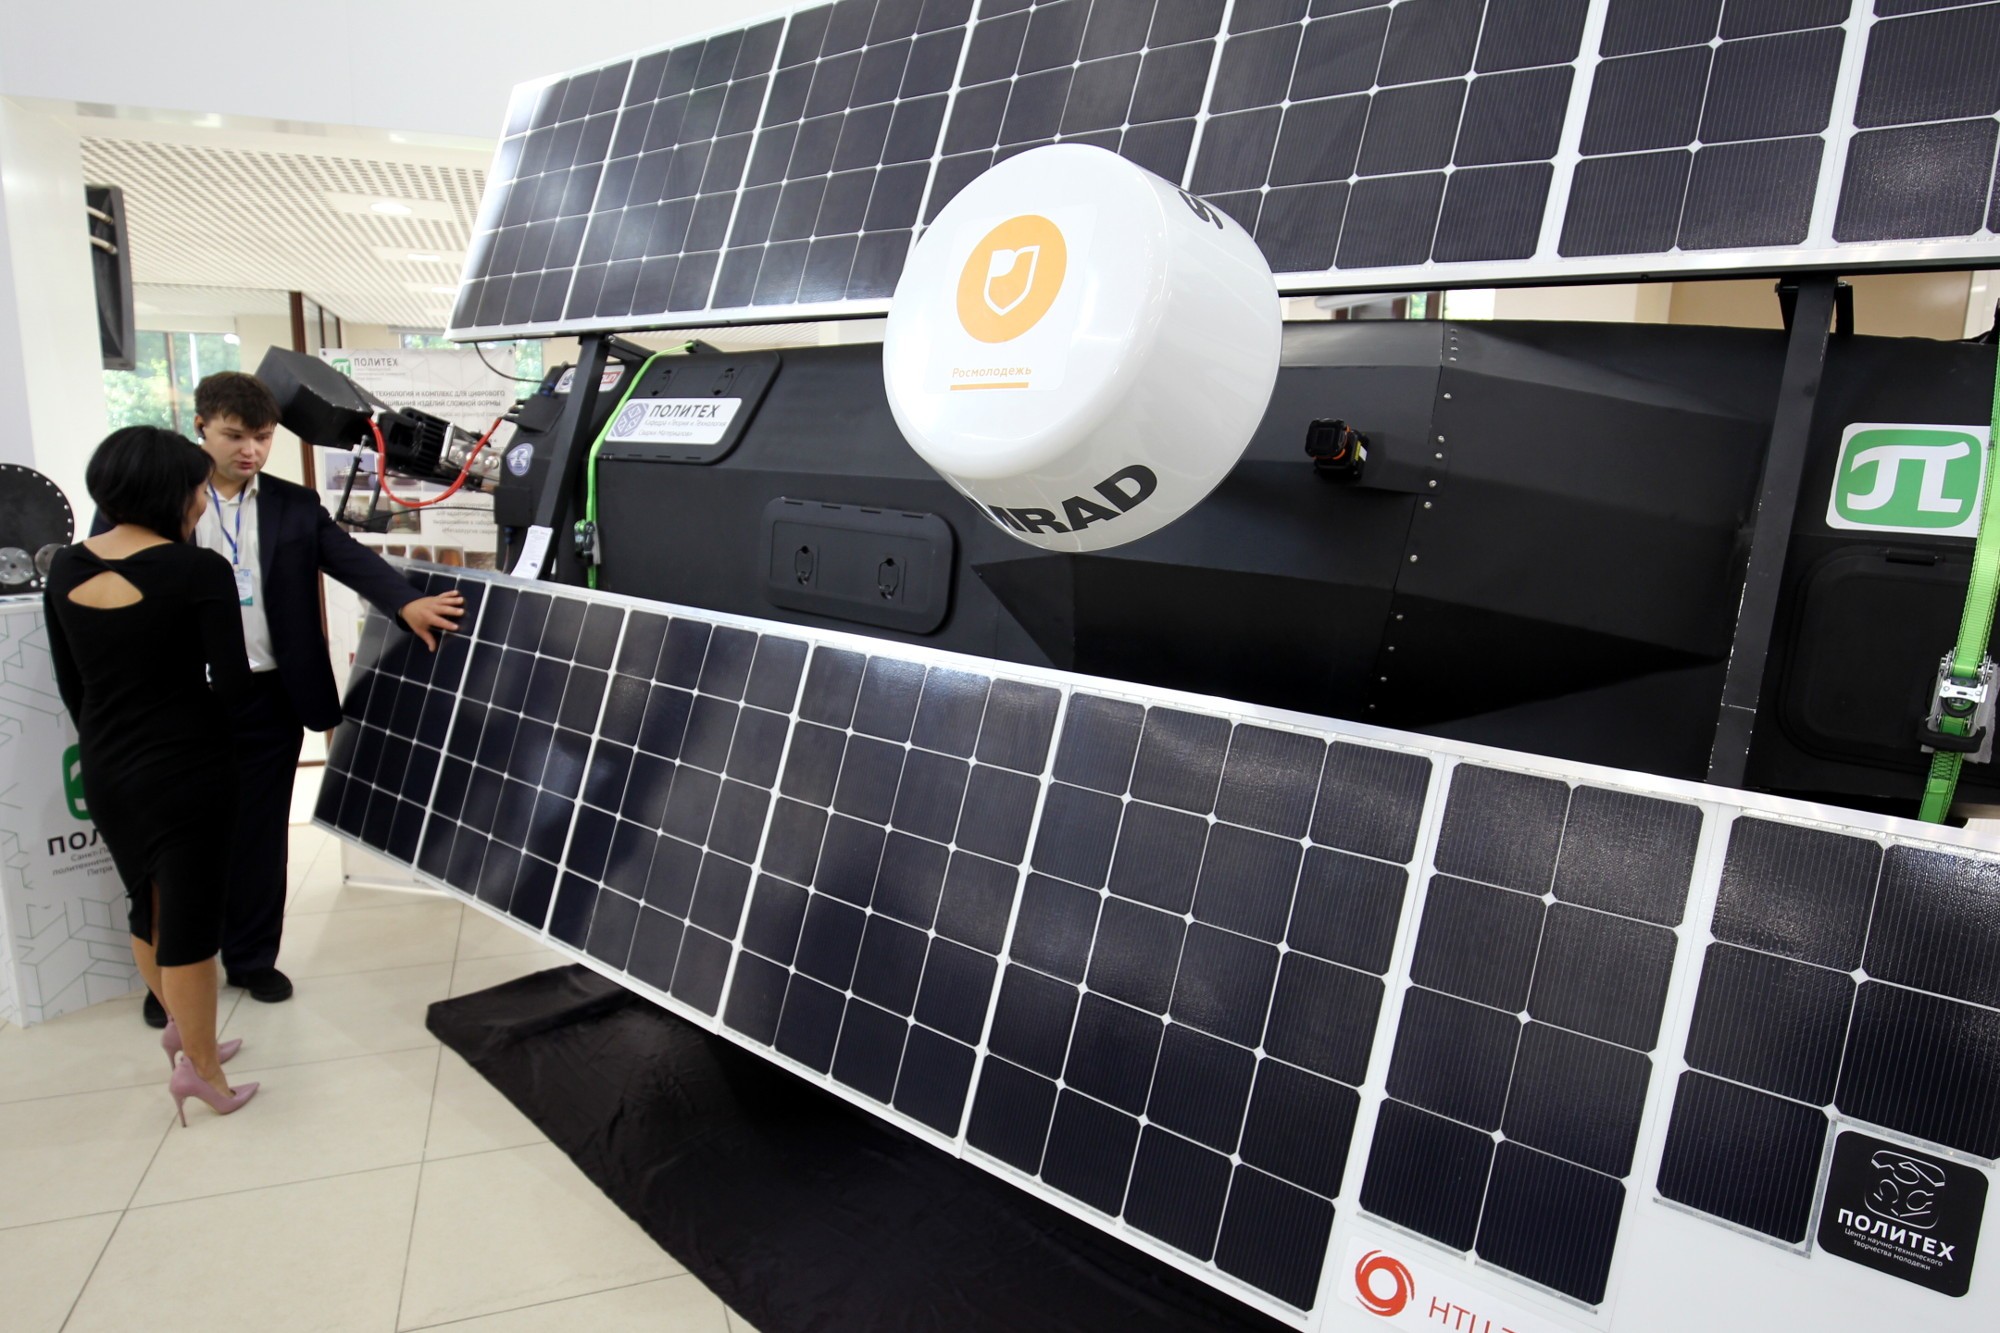 катер на солнечных батареях политехнический университет инновации